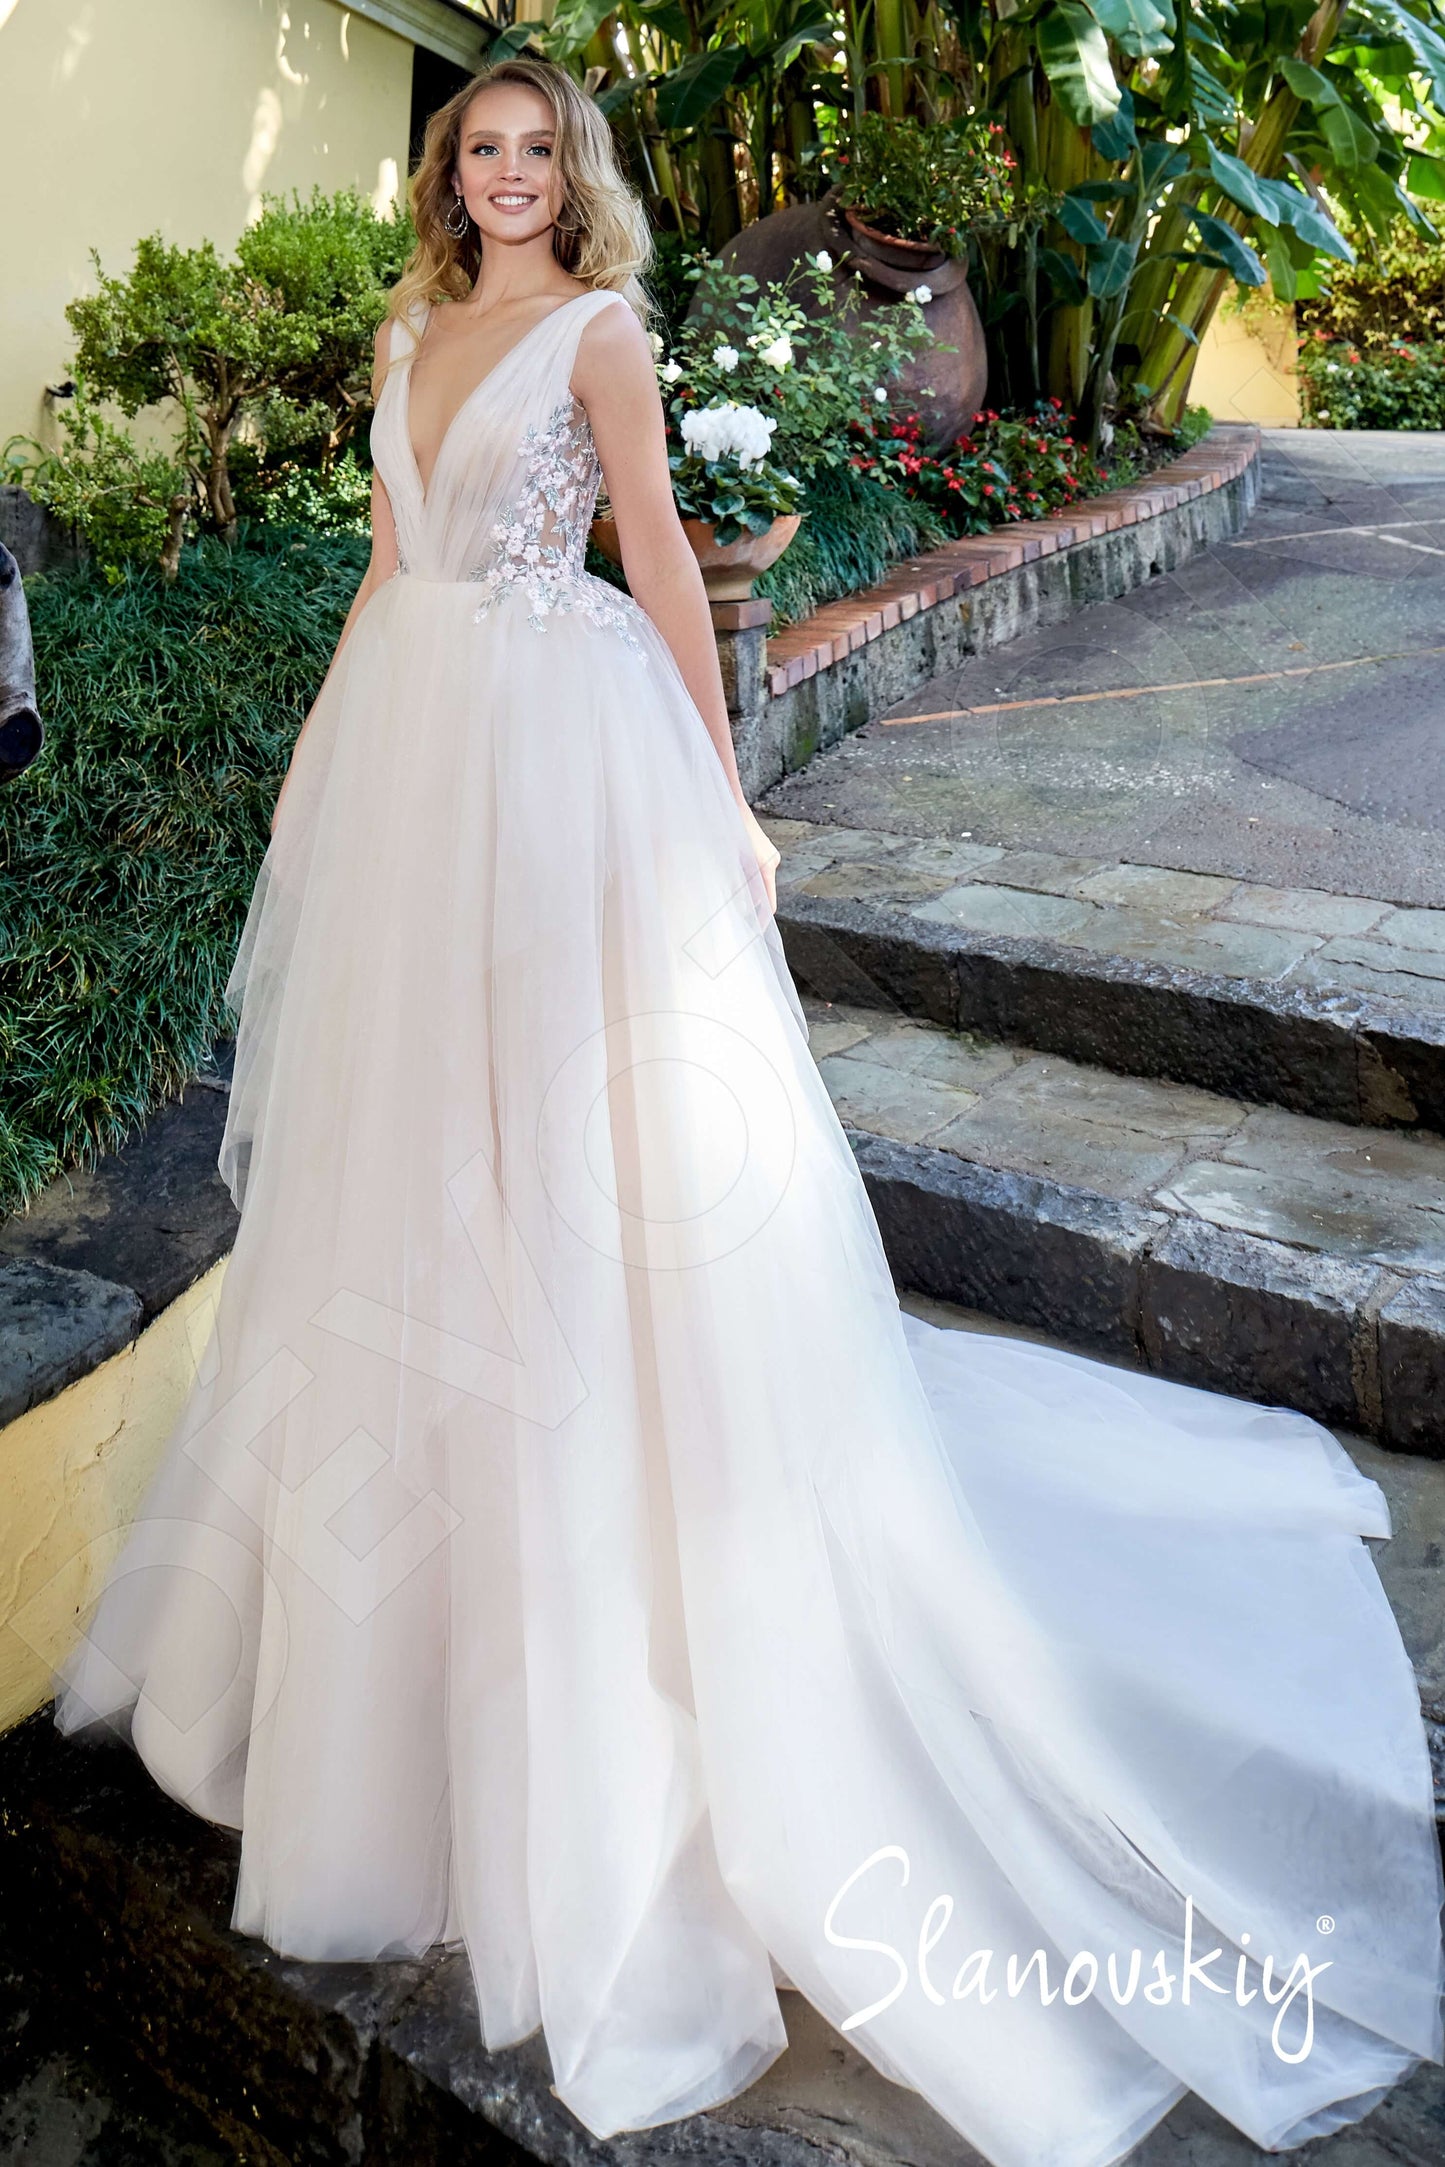 Marketta Open back A-line Sleeveless Wedding Dress Front